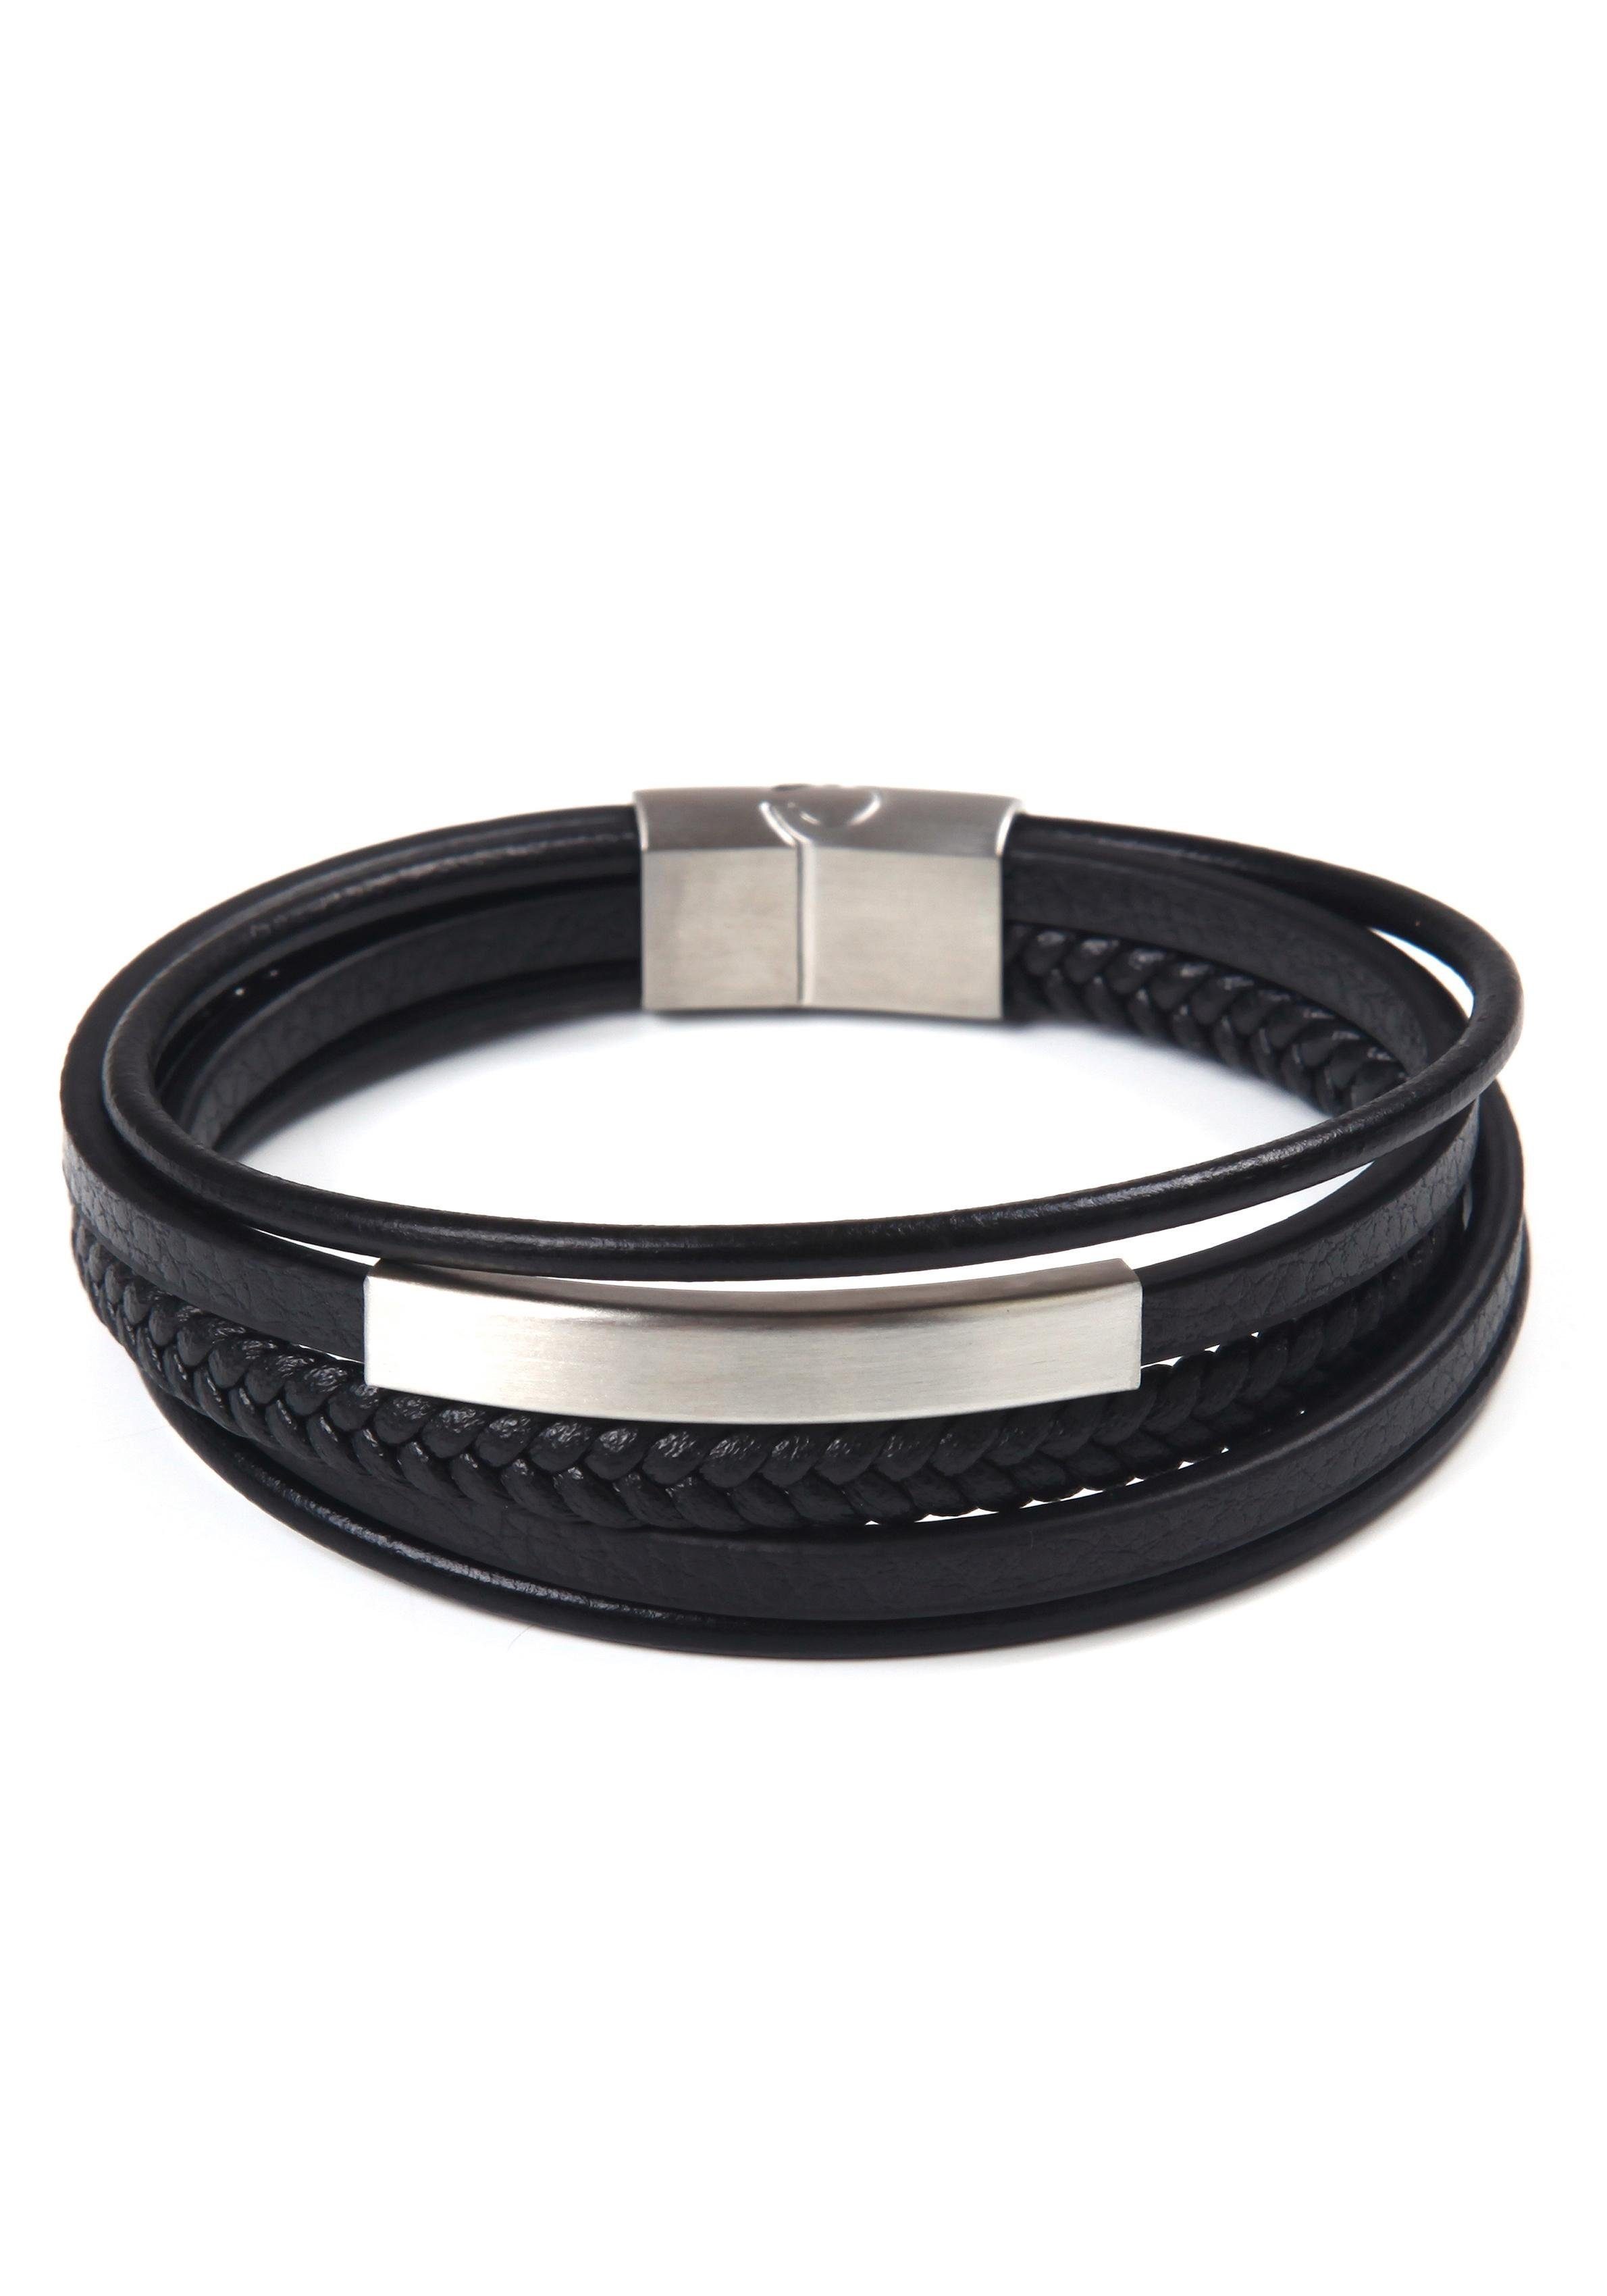 sportlich-eleganten mehrreihig Armband edelstahlfarben-schwarz Design Stil, stylisches im Firetti